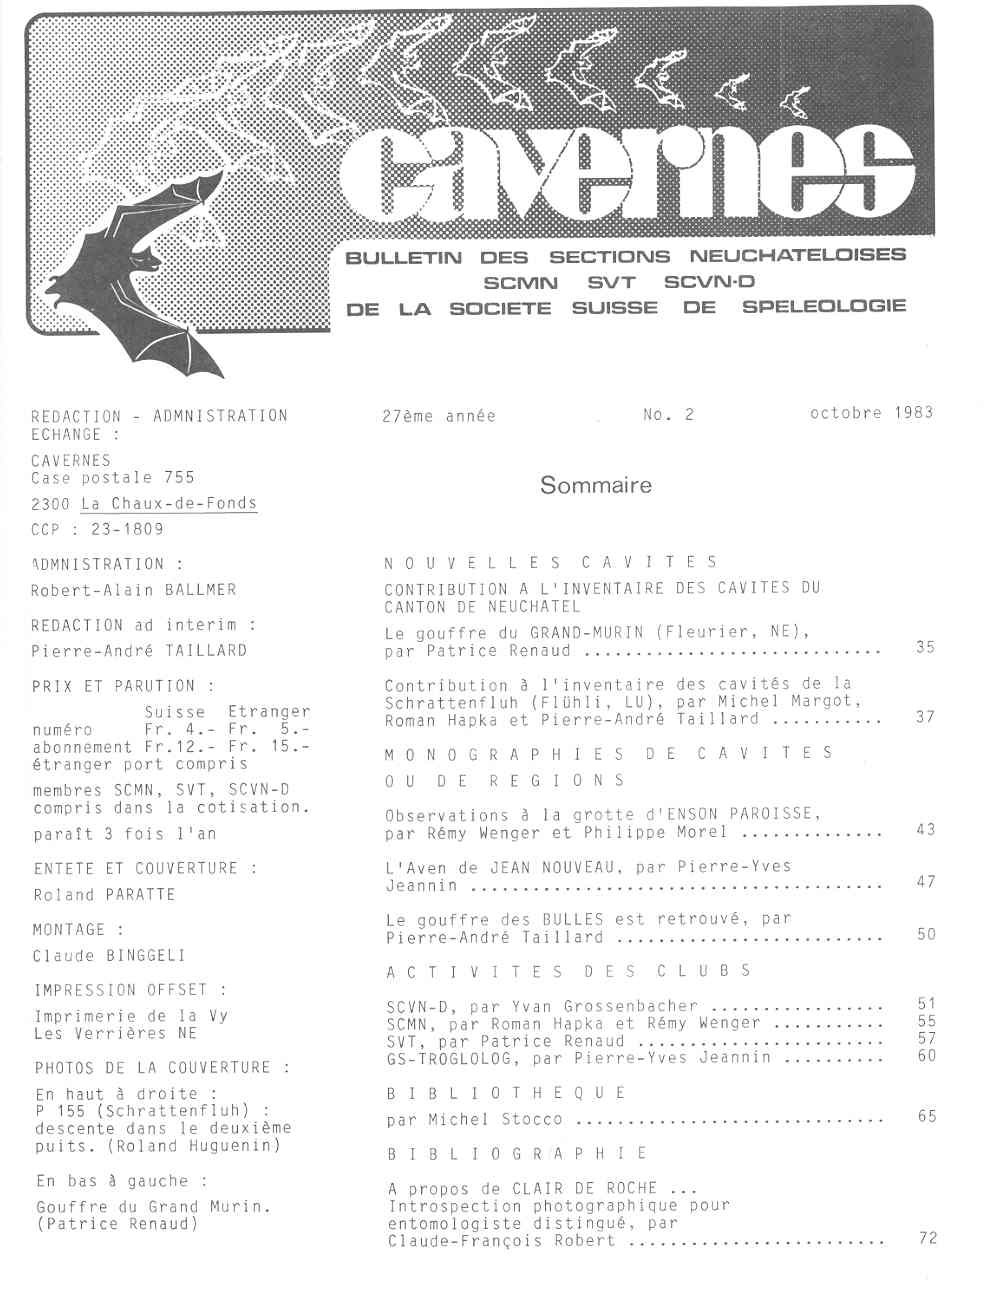 Cavernes/anno da 1981 n°2 a 1983 n°2.jpg